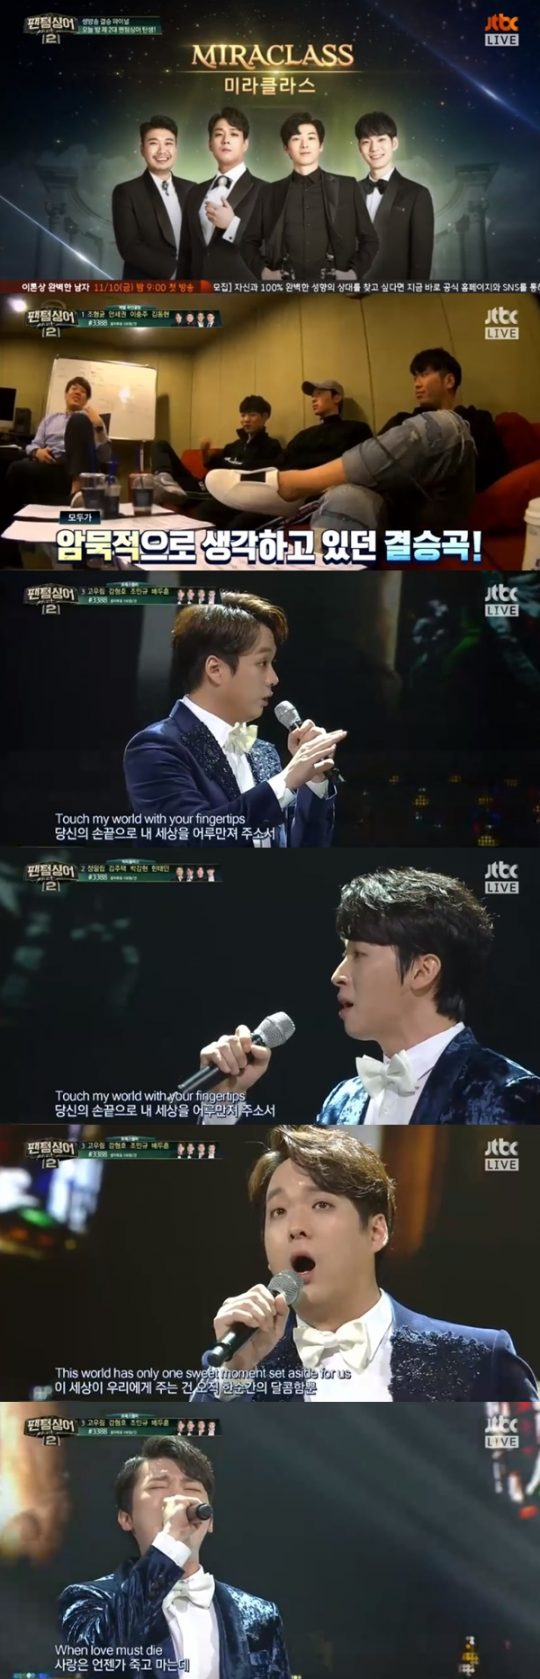 JTBC ‘팬텀싱어2’ 방송 화면 캡쳐